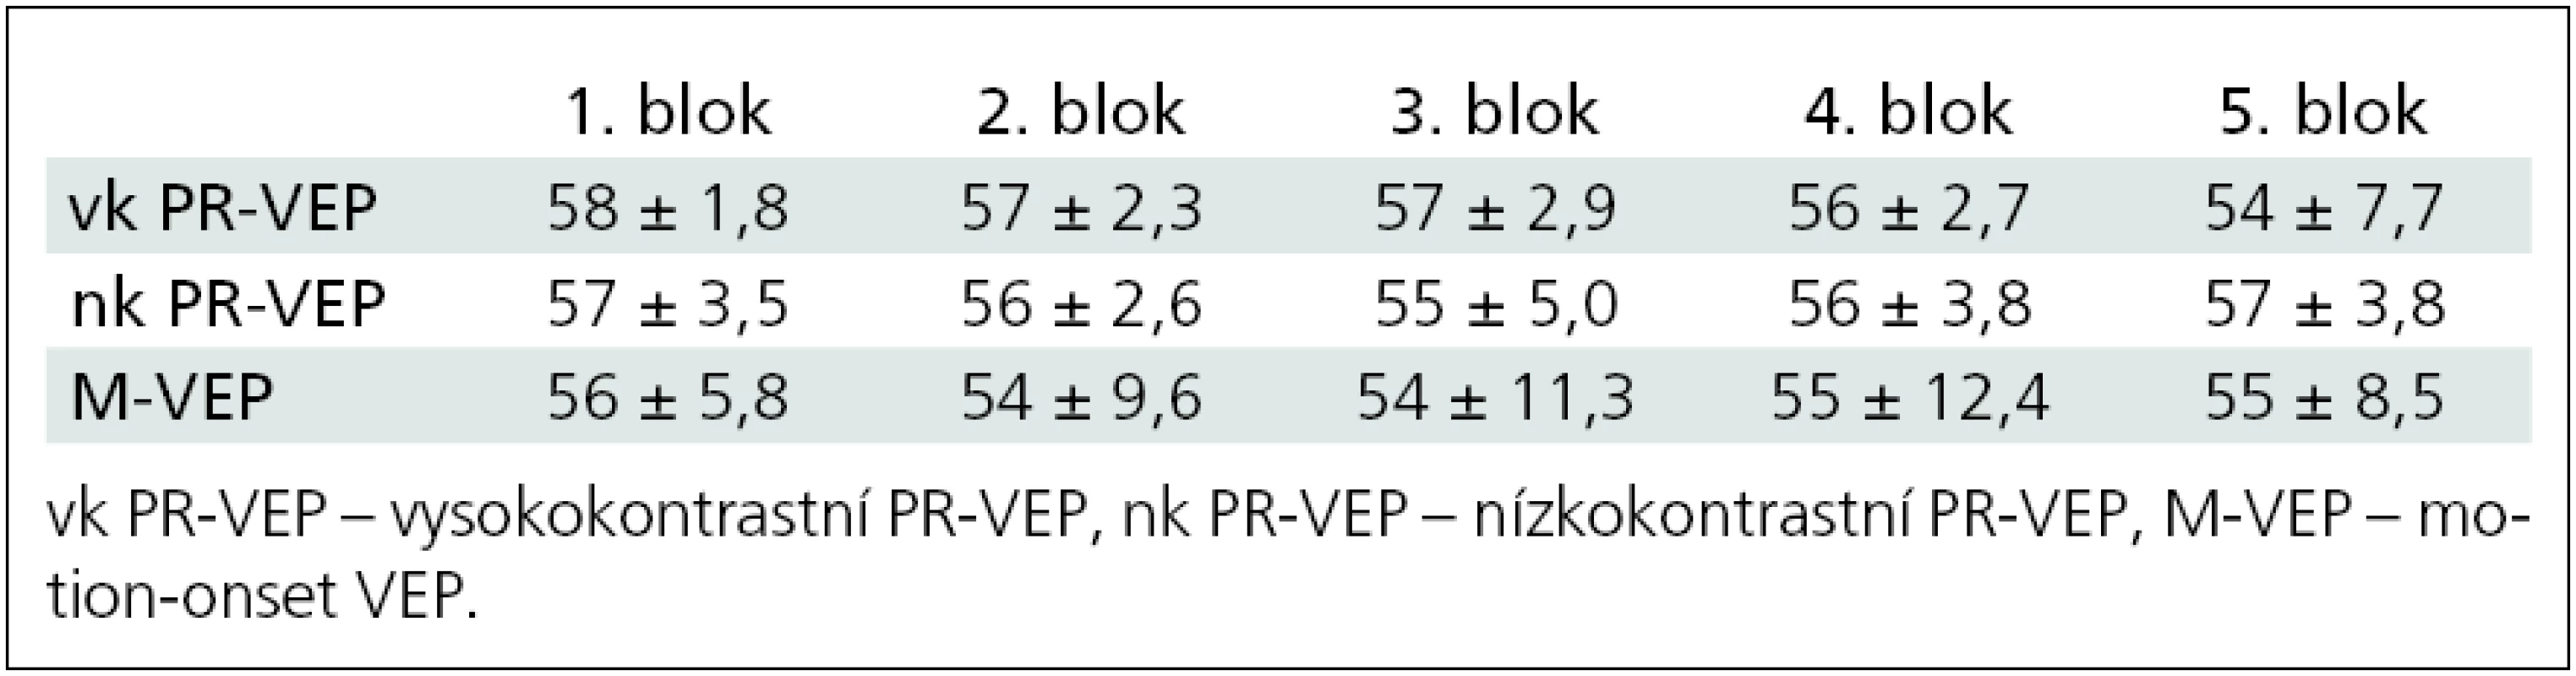 Průměrný počet „artefact free“ odpovědí v jednotlivých blocích, které byly zprůměrněny (n = 12).